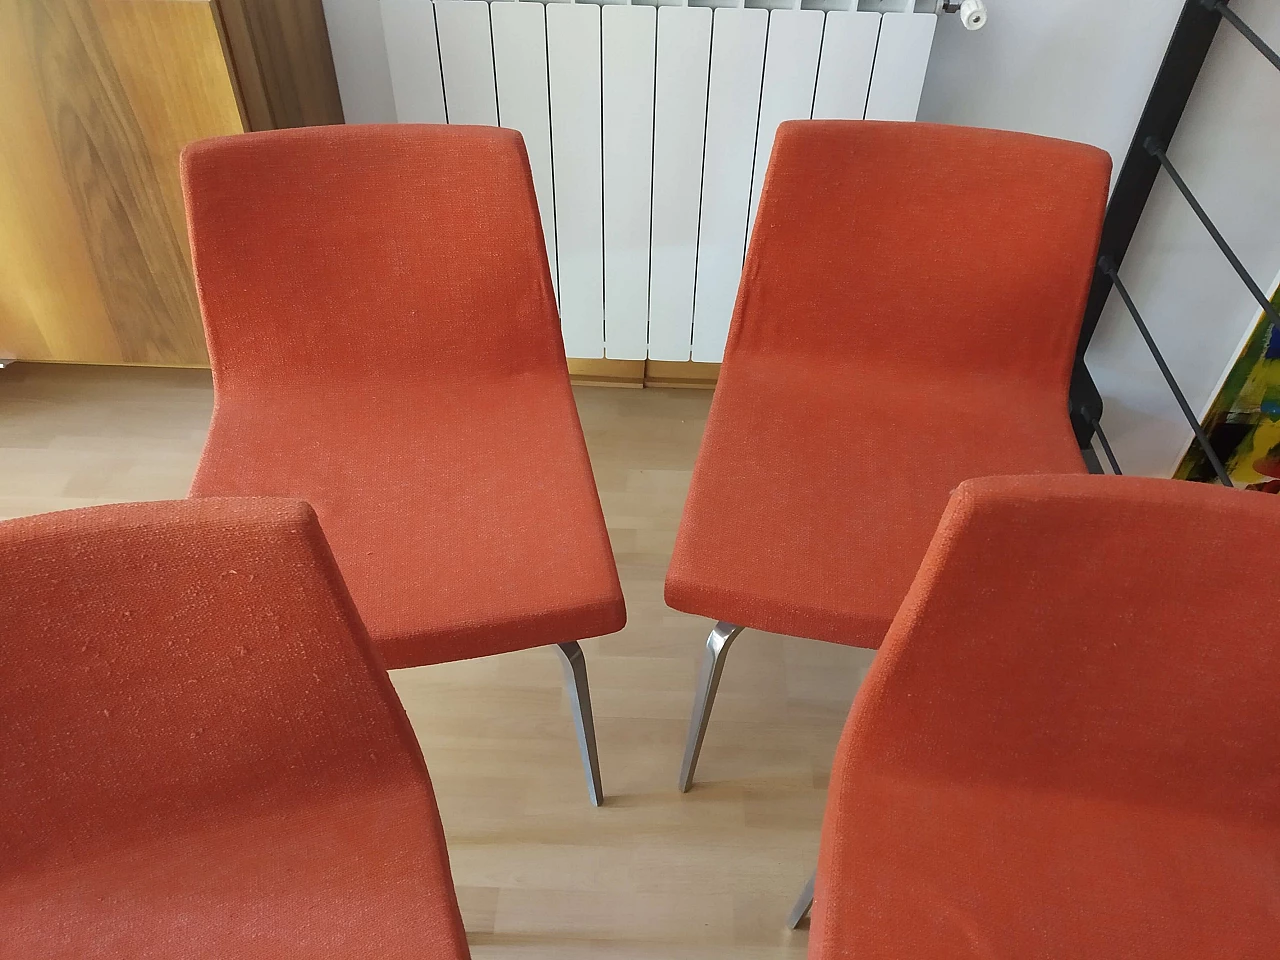 4 Hella Chairs by Mauro Lipparini for MisuraEmme 1477135